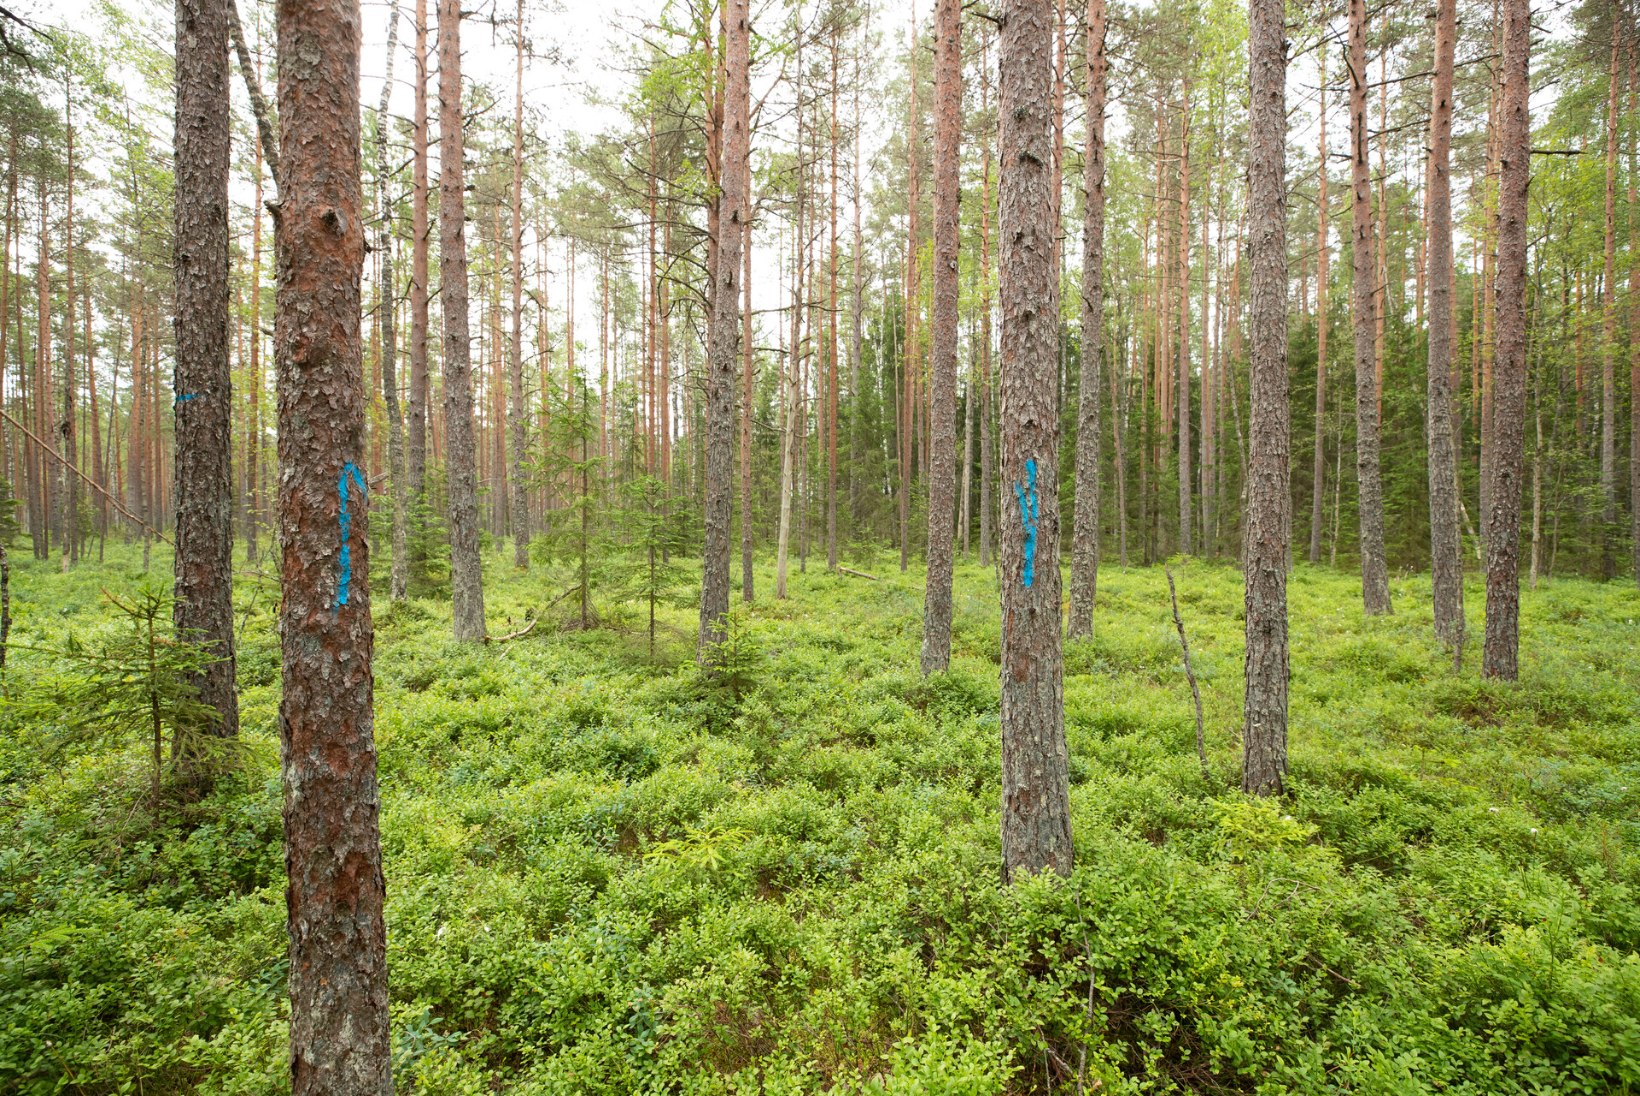 ARVUTAME ROHELISEMAKS! Miljonite tonnide küsimus: Eesti teatab maailmale, et meie metsad seovad süsinikku – aga tegelikult on vastupidi!